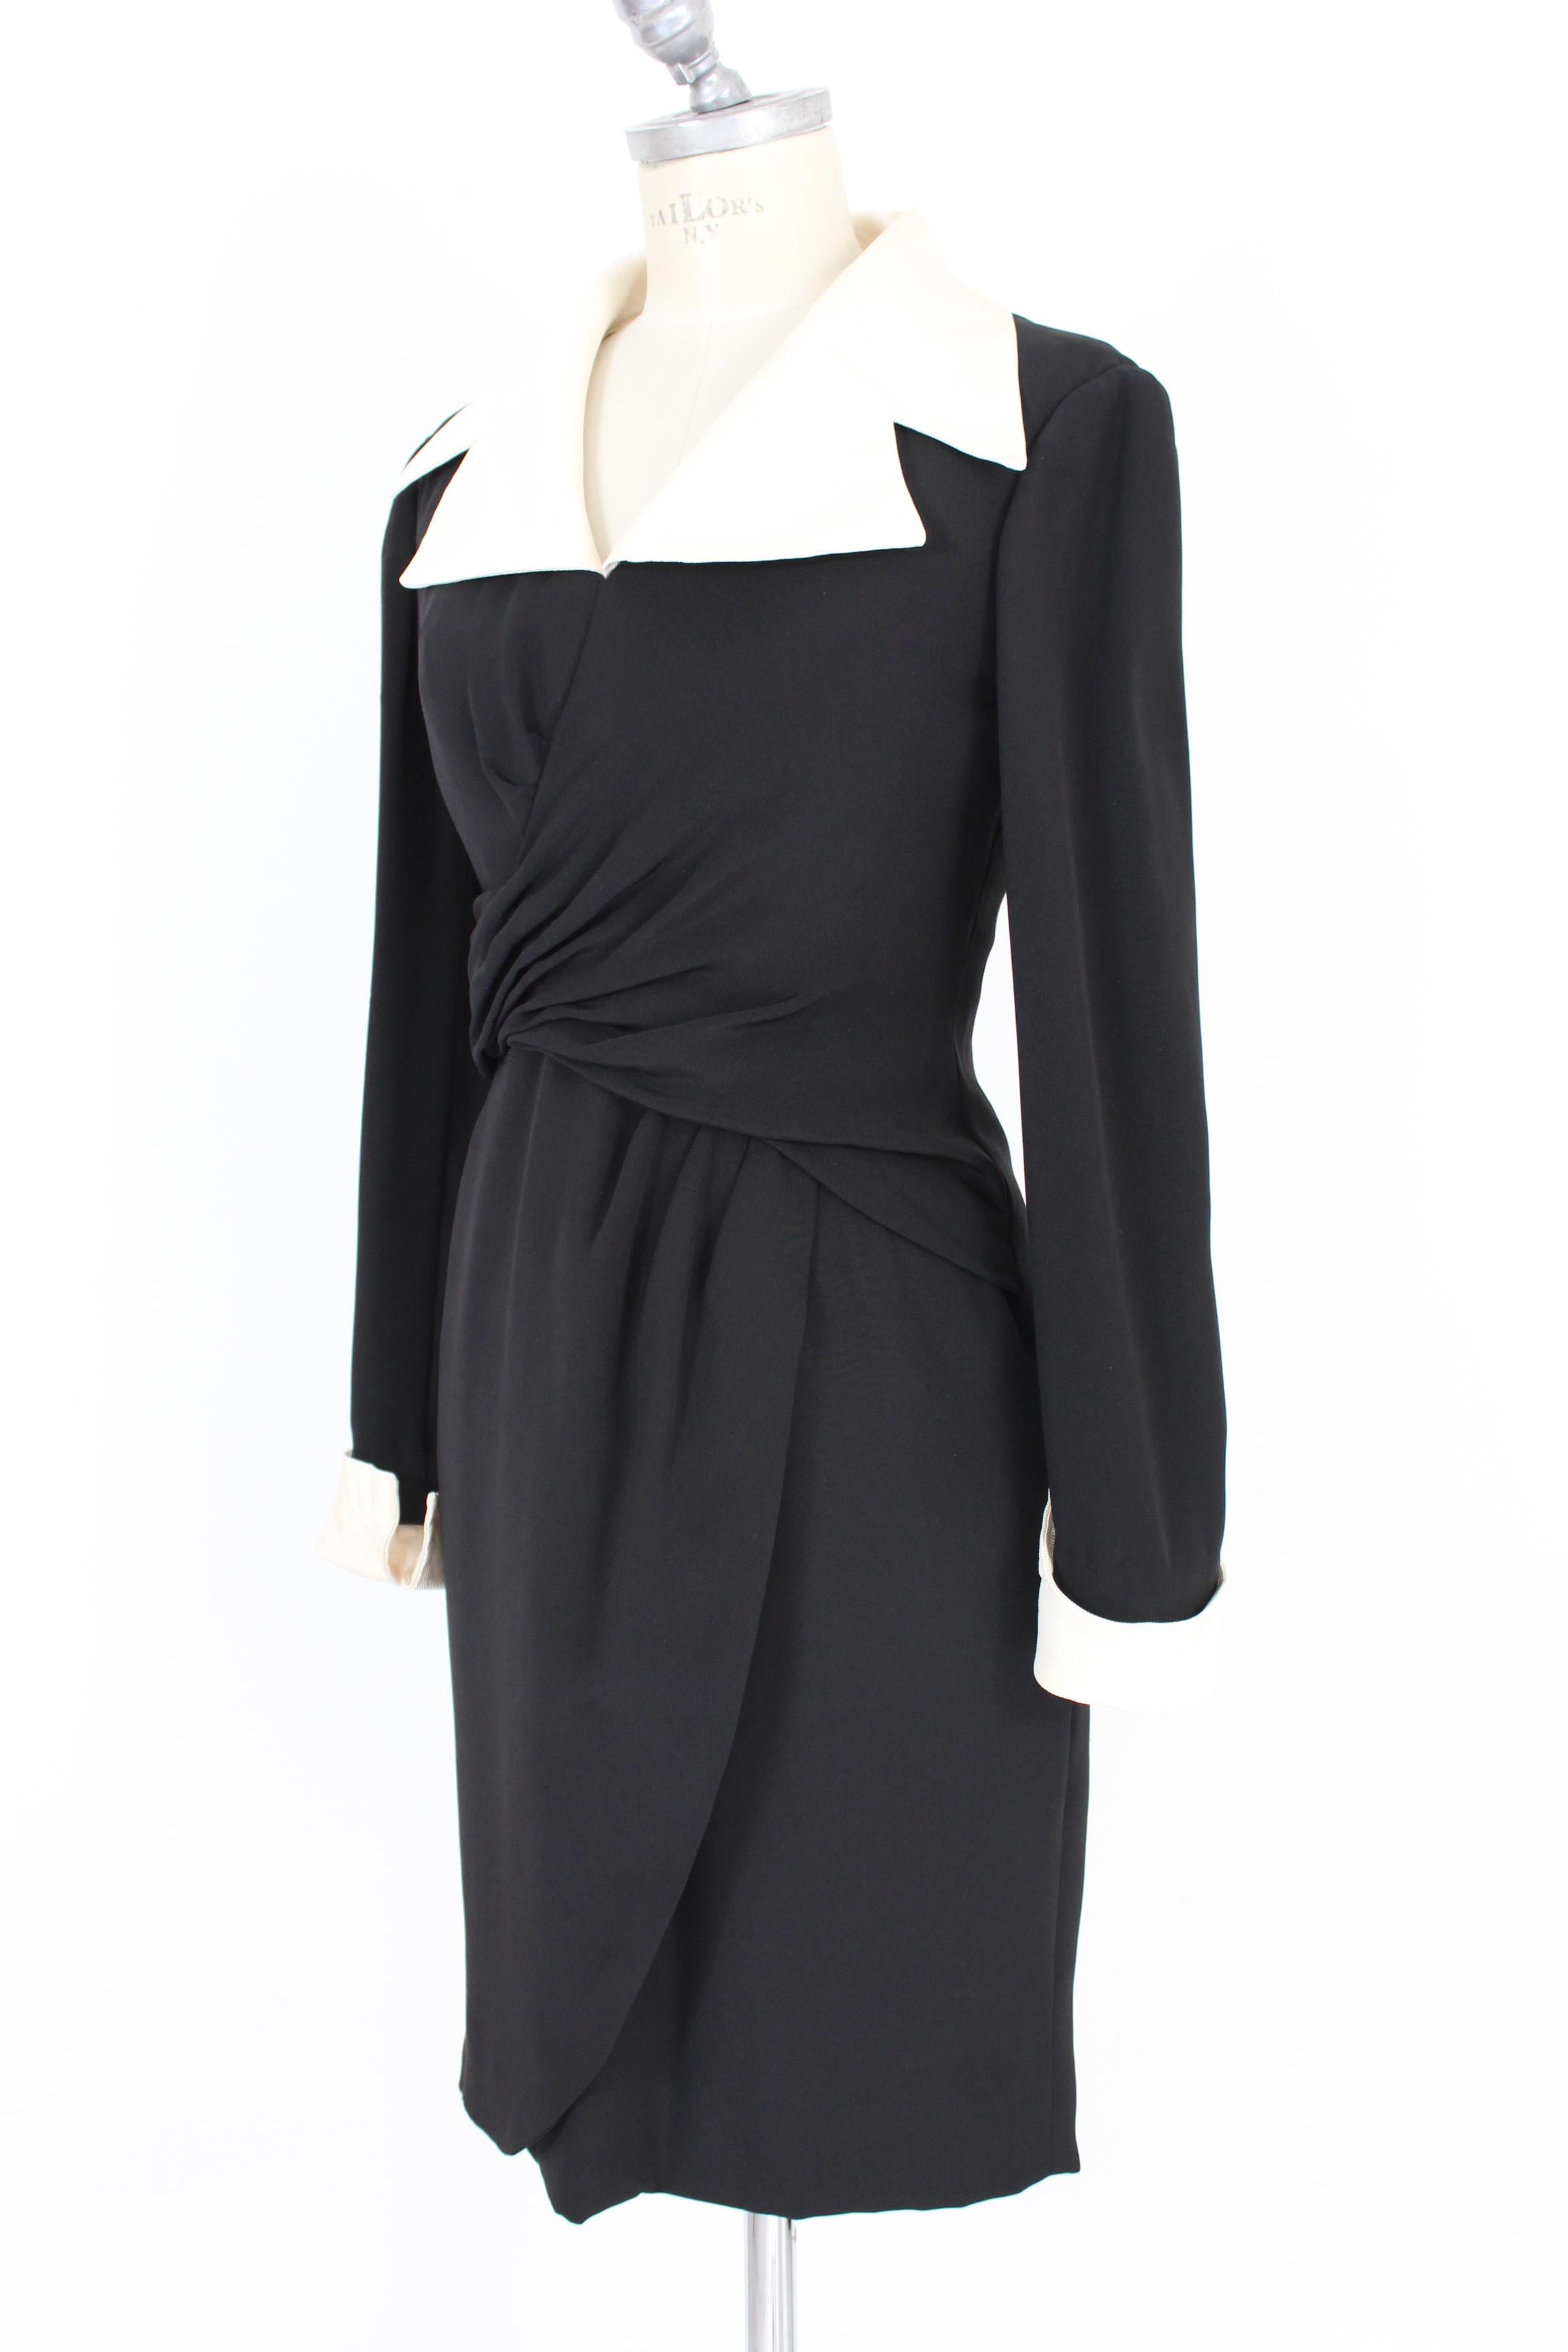 Louis Feraud Black Beige Silk Sheath Dress In Excellent Condition In Brindisi, Bt